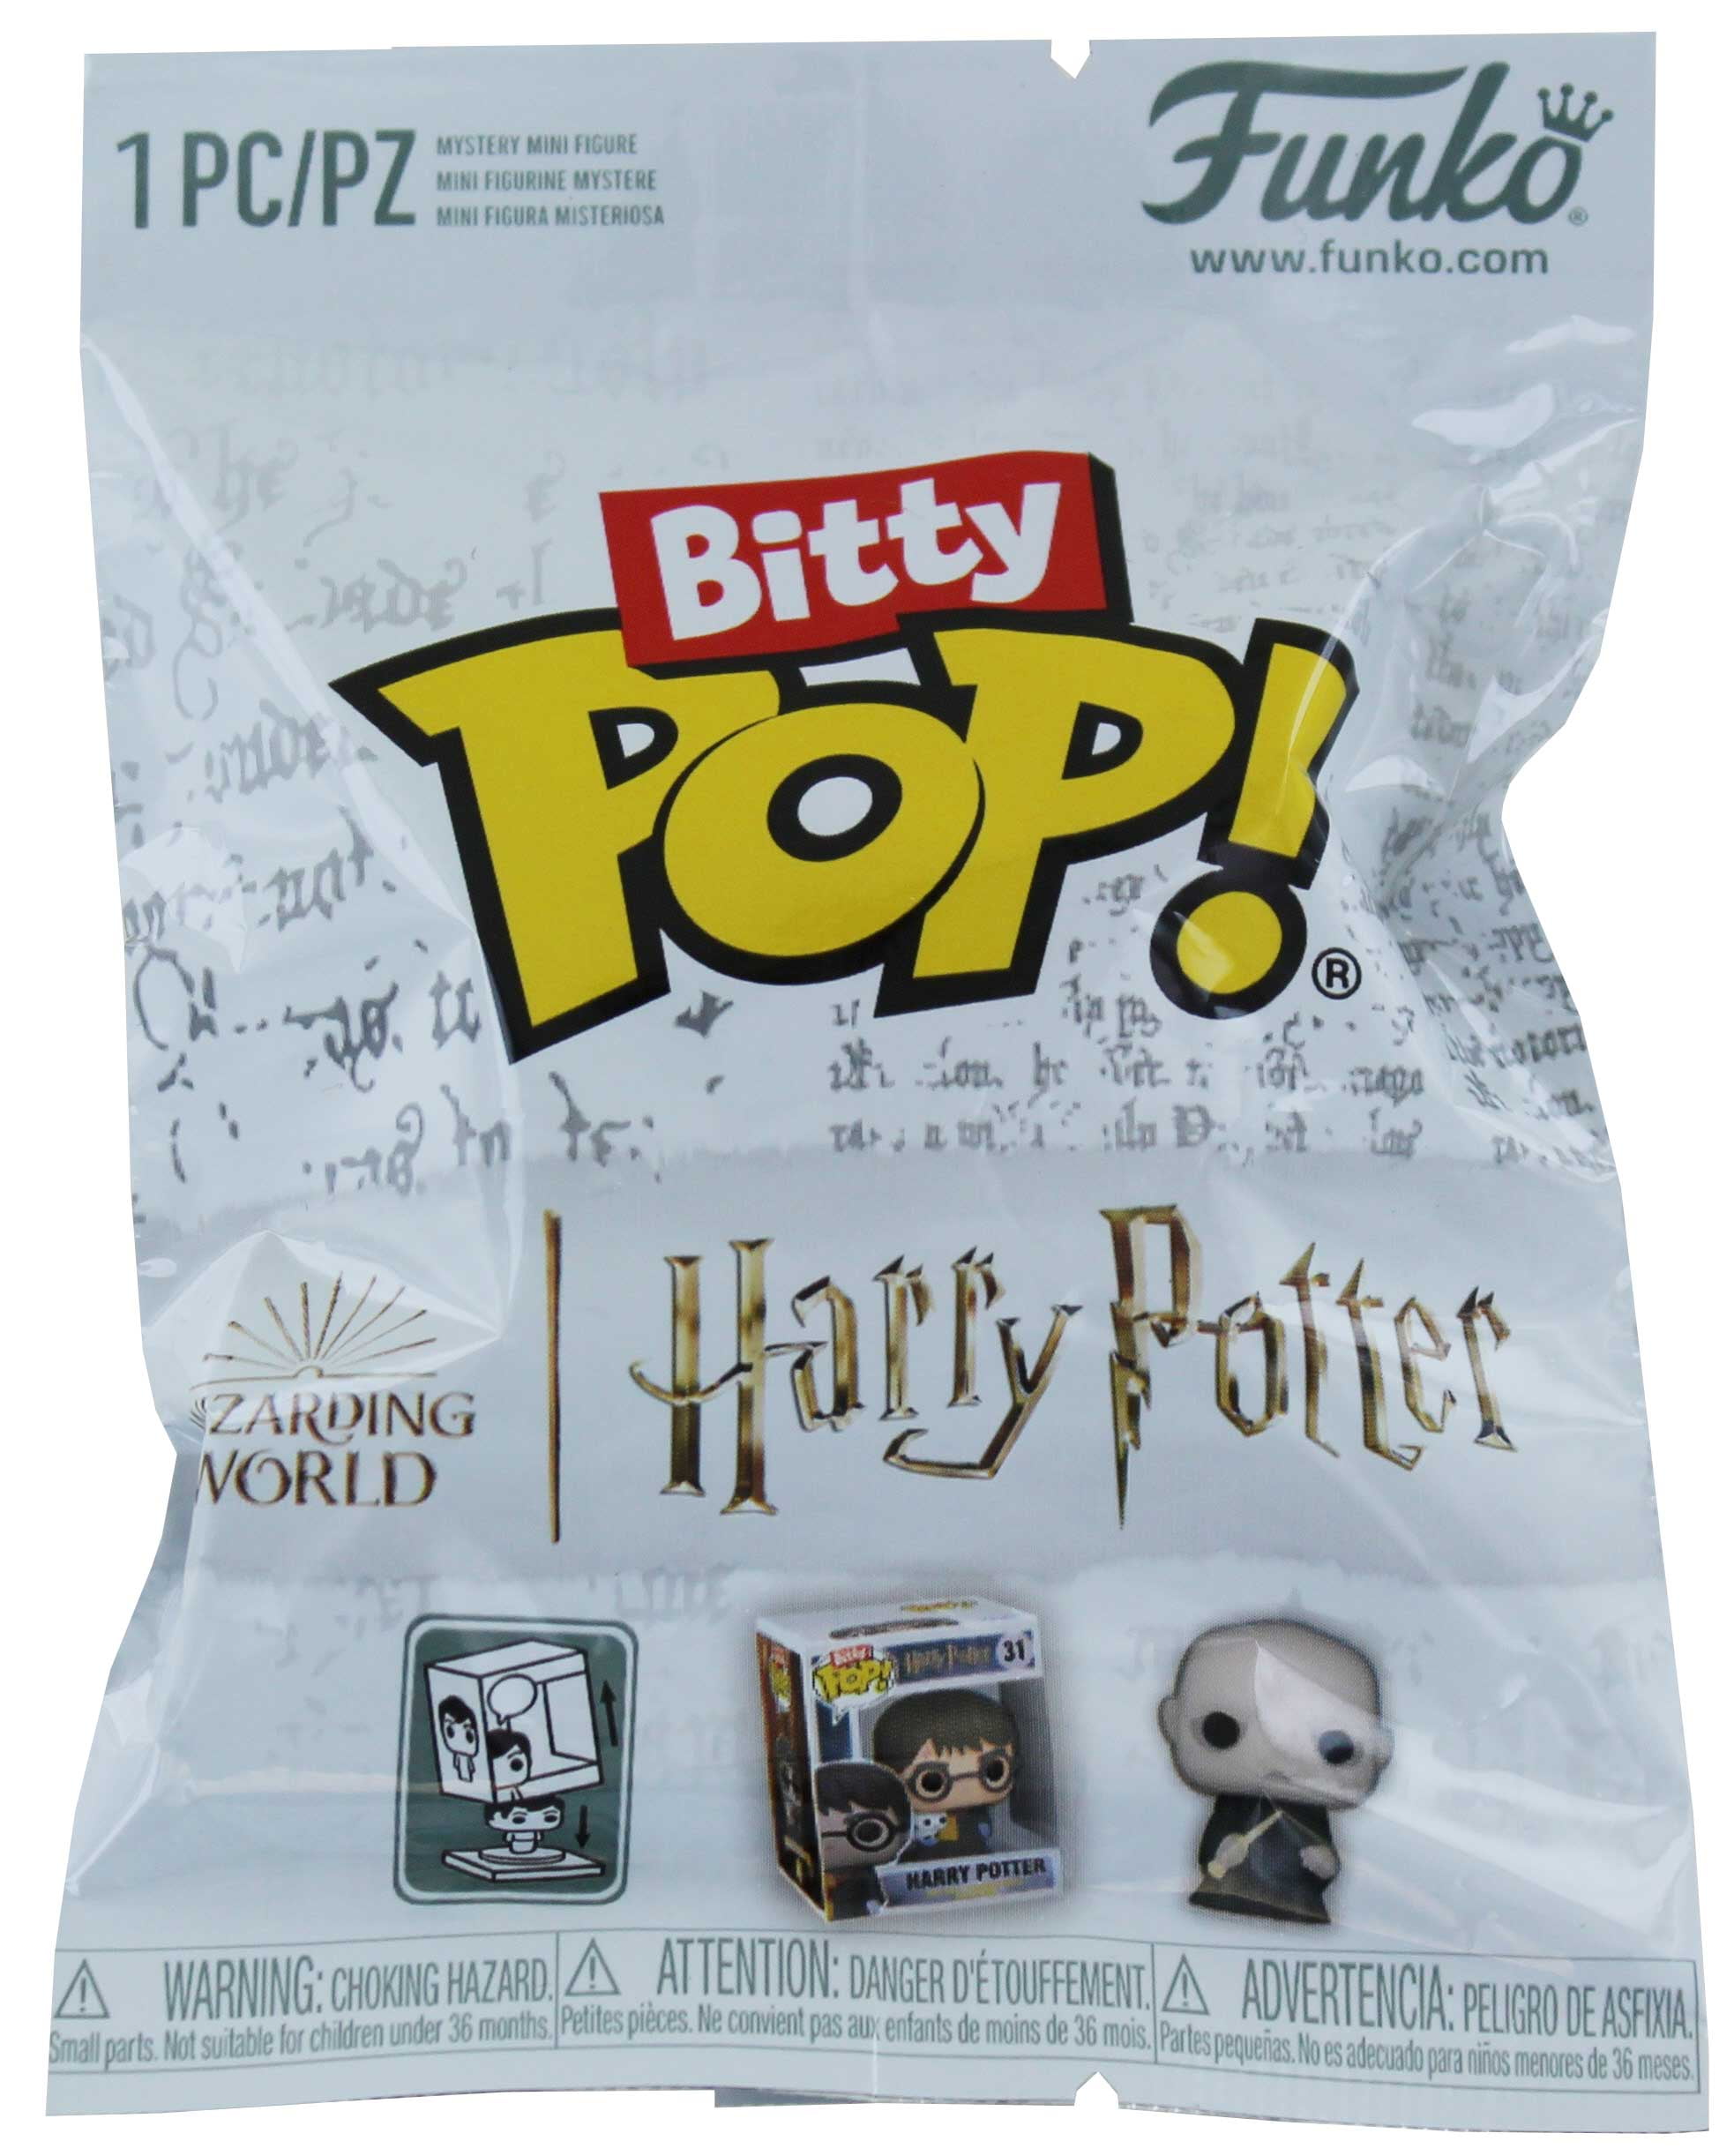 Funko Bitty Pop! Harry Potter™ vinyl figure blind bag, Five Below